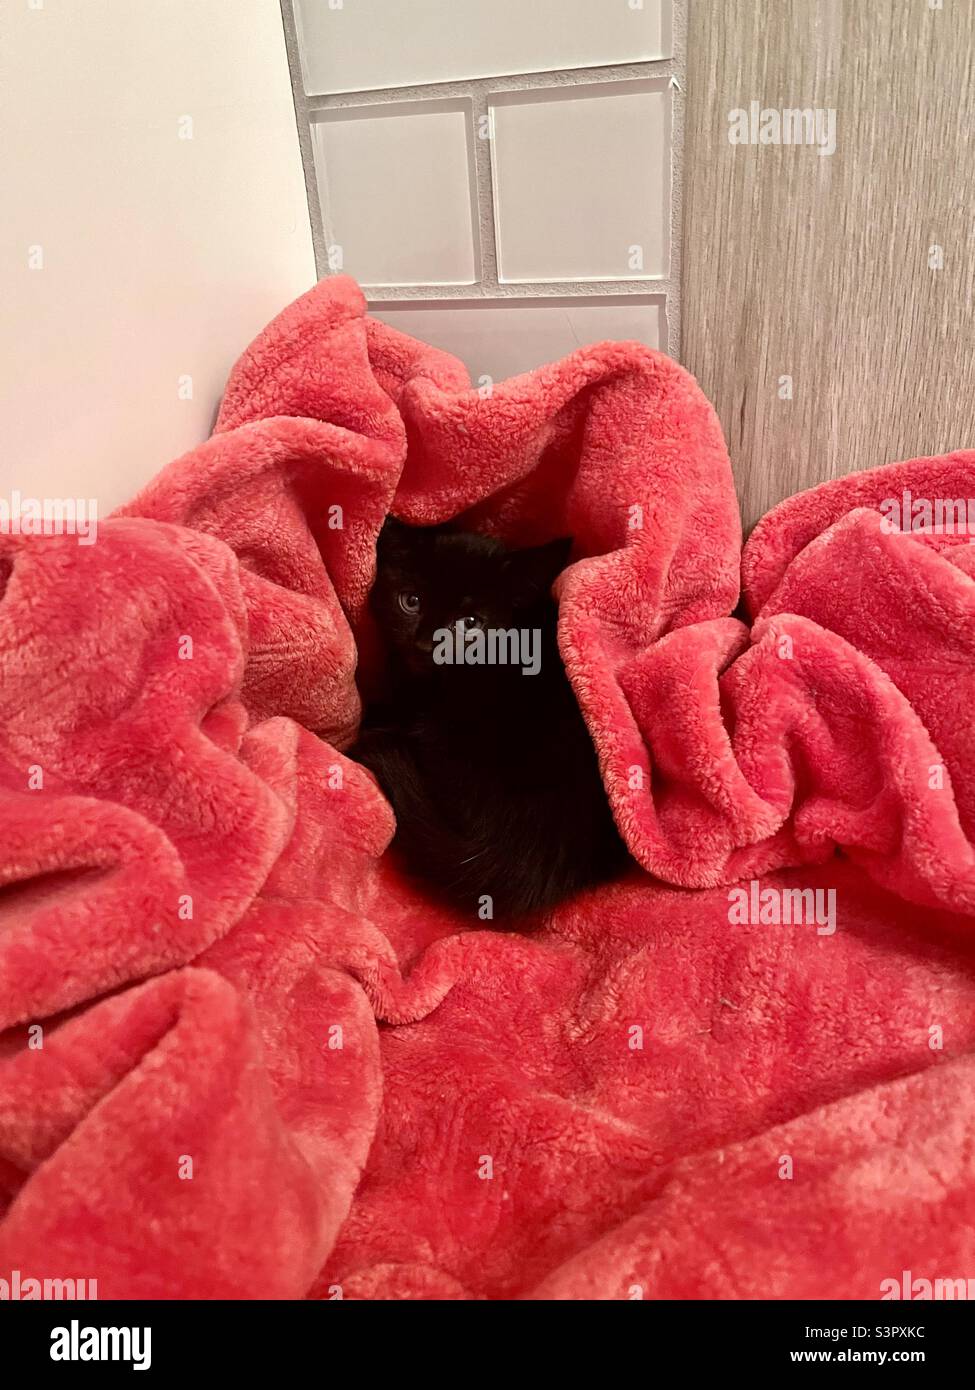 Petit chaton noir accroché dans une couverture rose avec mur de carreaux de salle de bains derrière, sauvé mais semble incertain même si confortable Banque D'Images